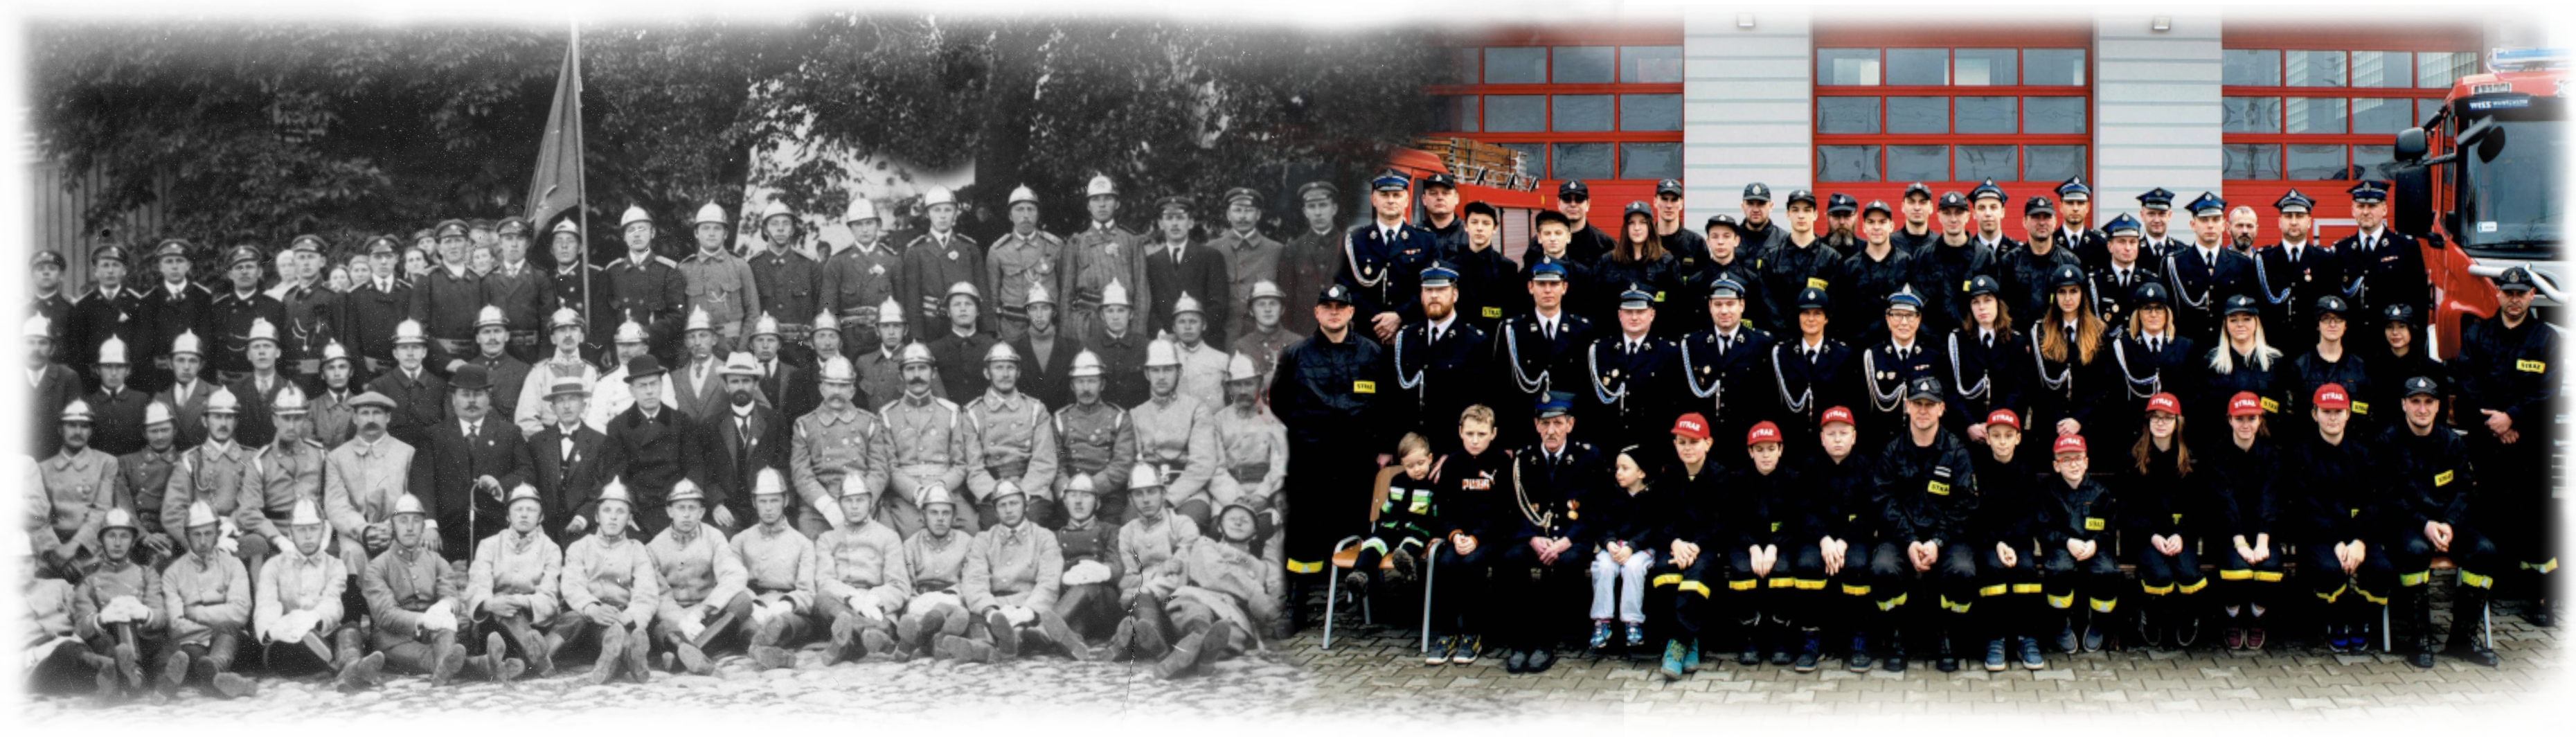 120. rocznica Ochotniczej Straży Pożarnej w Piasecznie